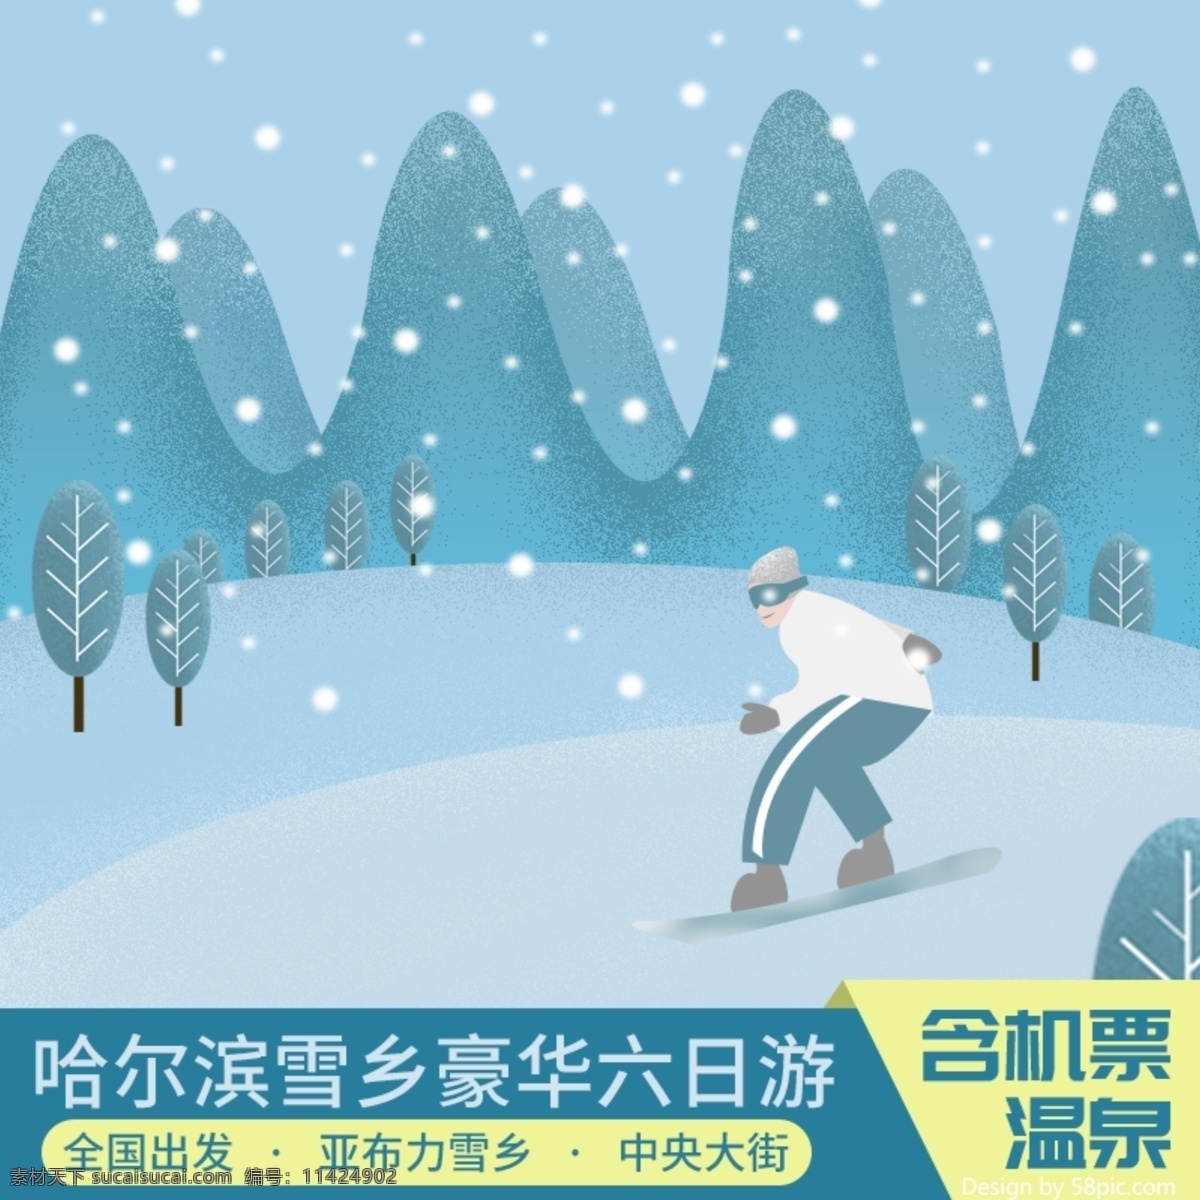 天猫 淘宝 原创 手绘 插画 冬 景 旅游 主 图 主图 滑雪 冬景